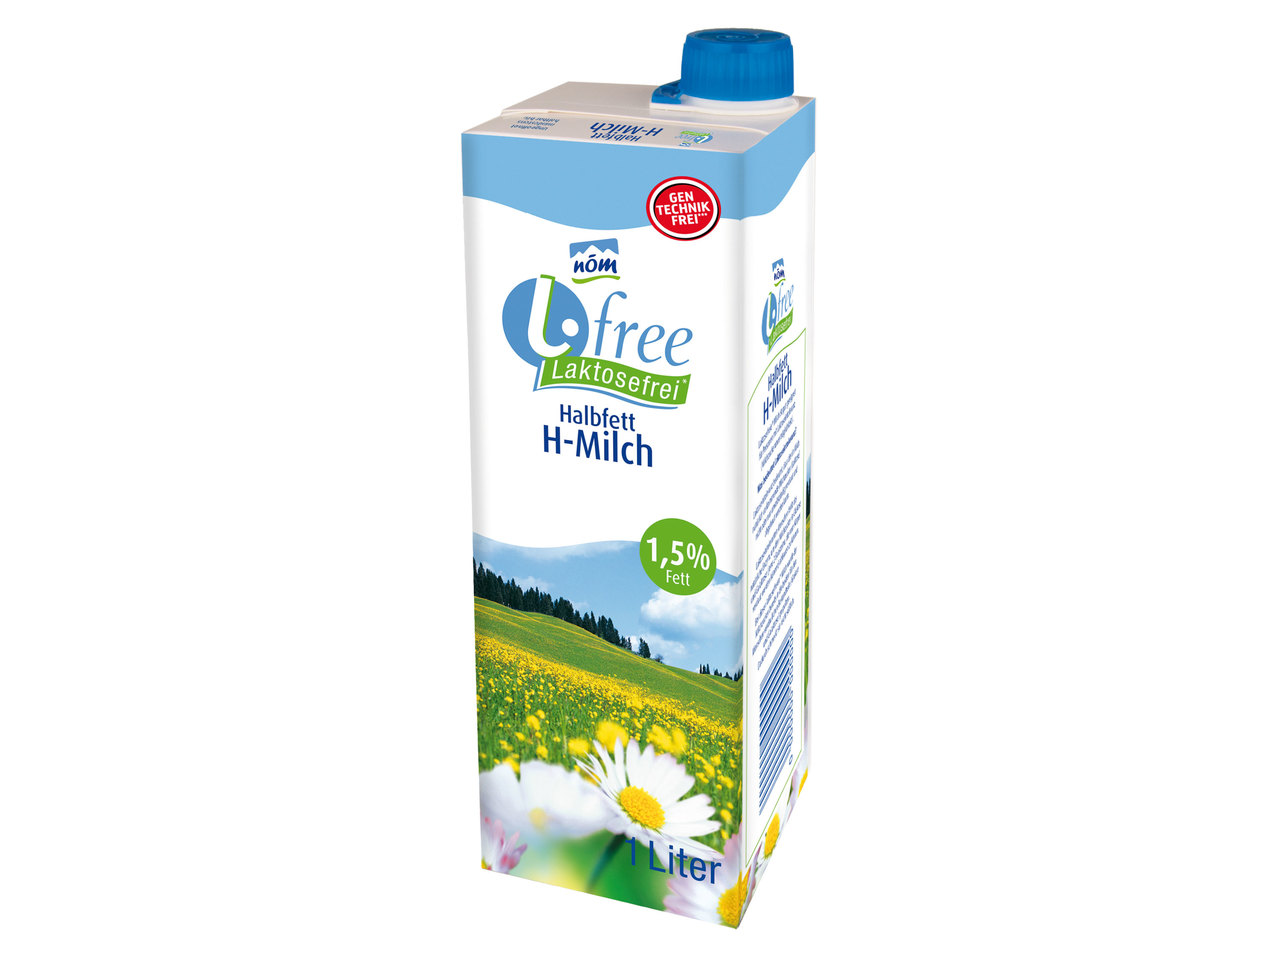 NÖM H-Milch L-free